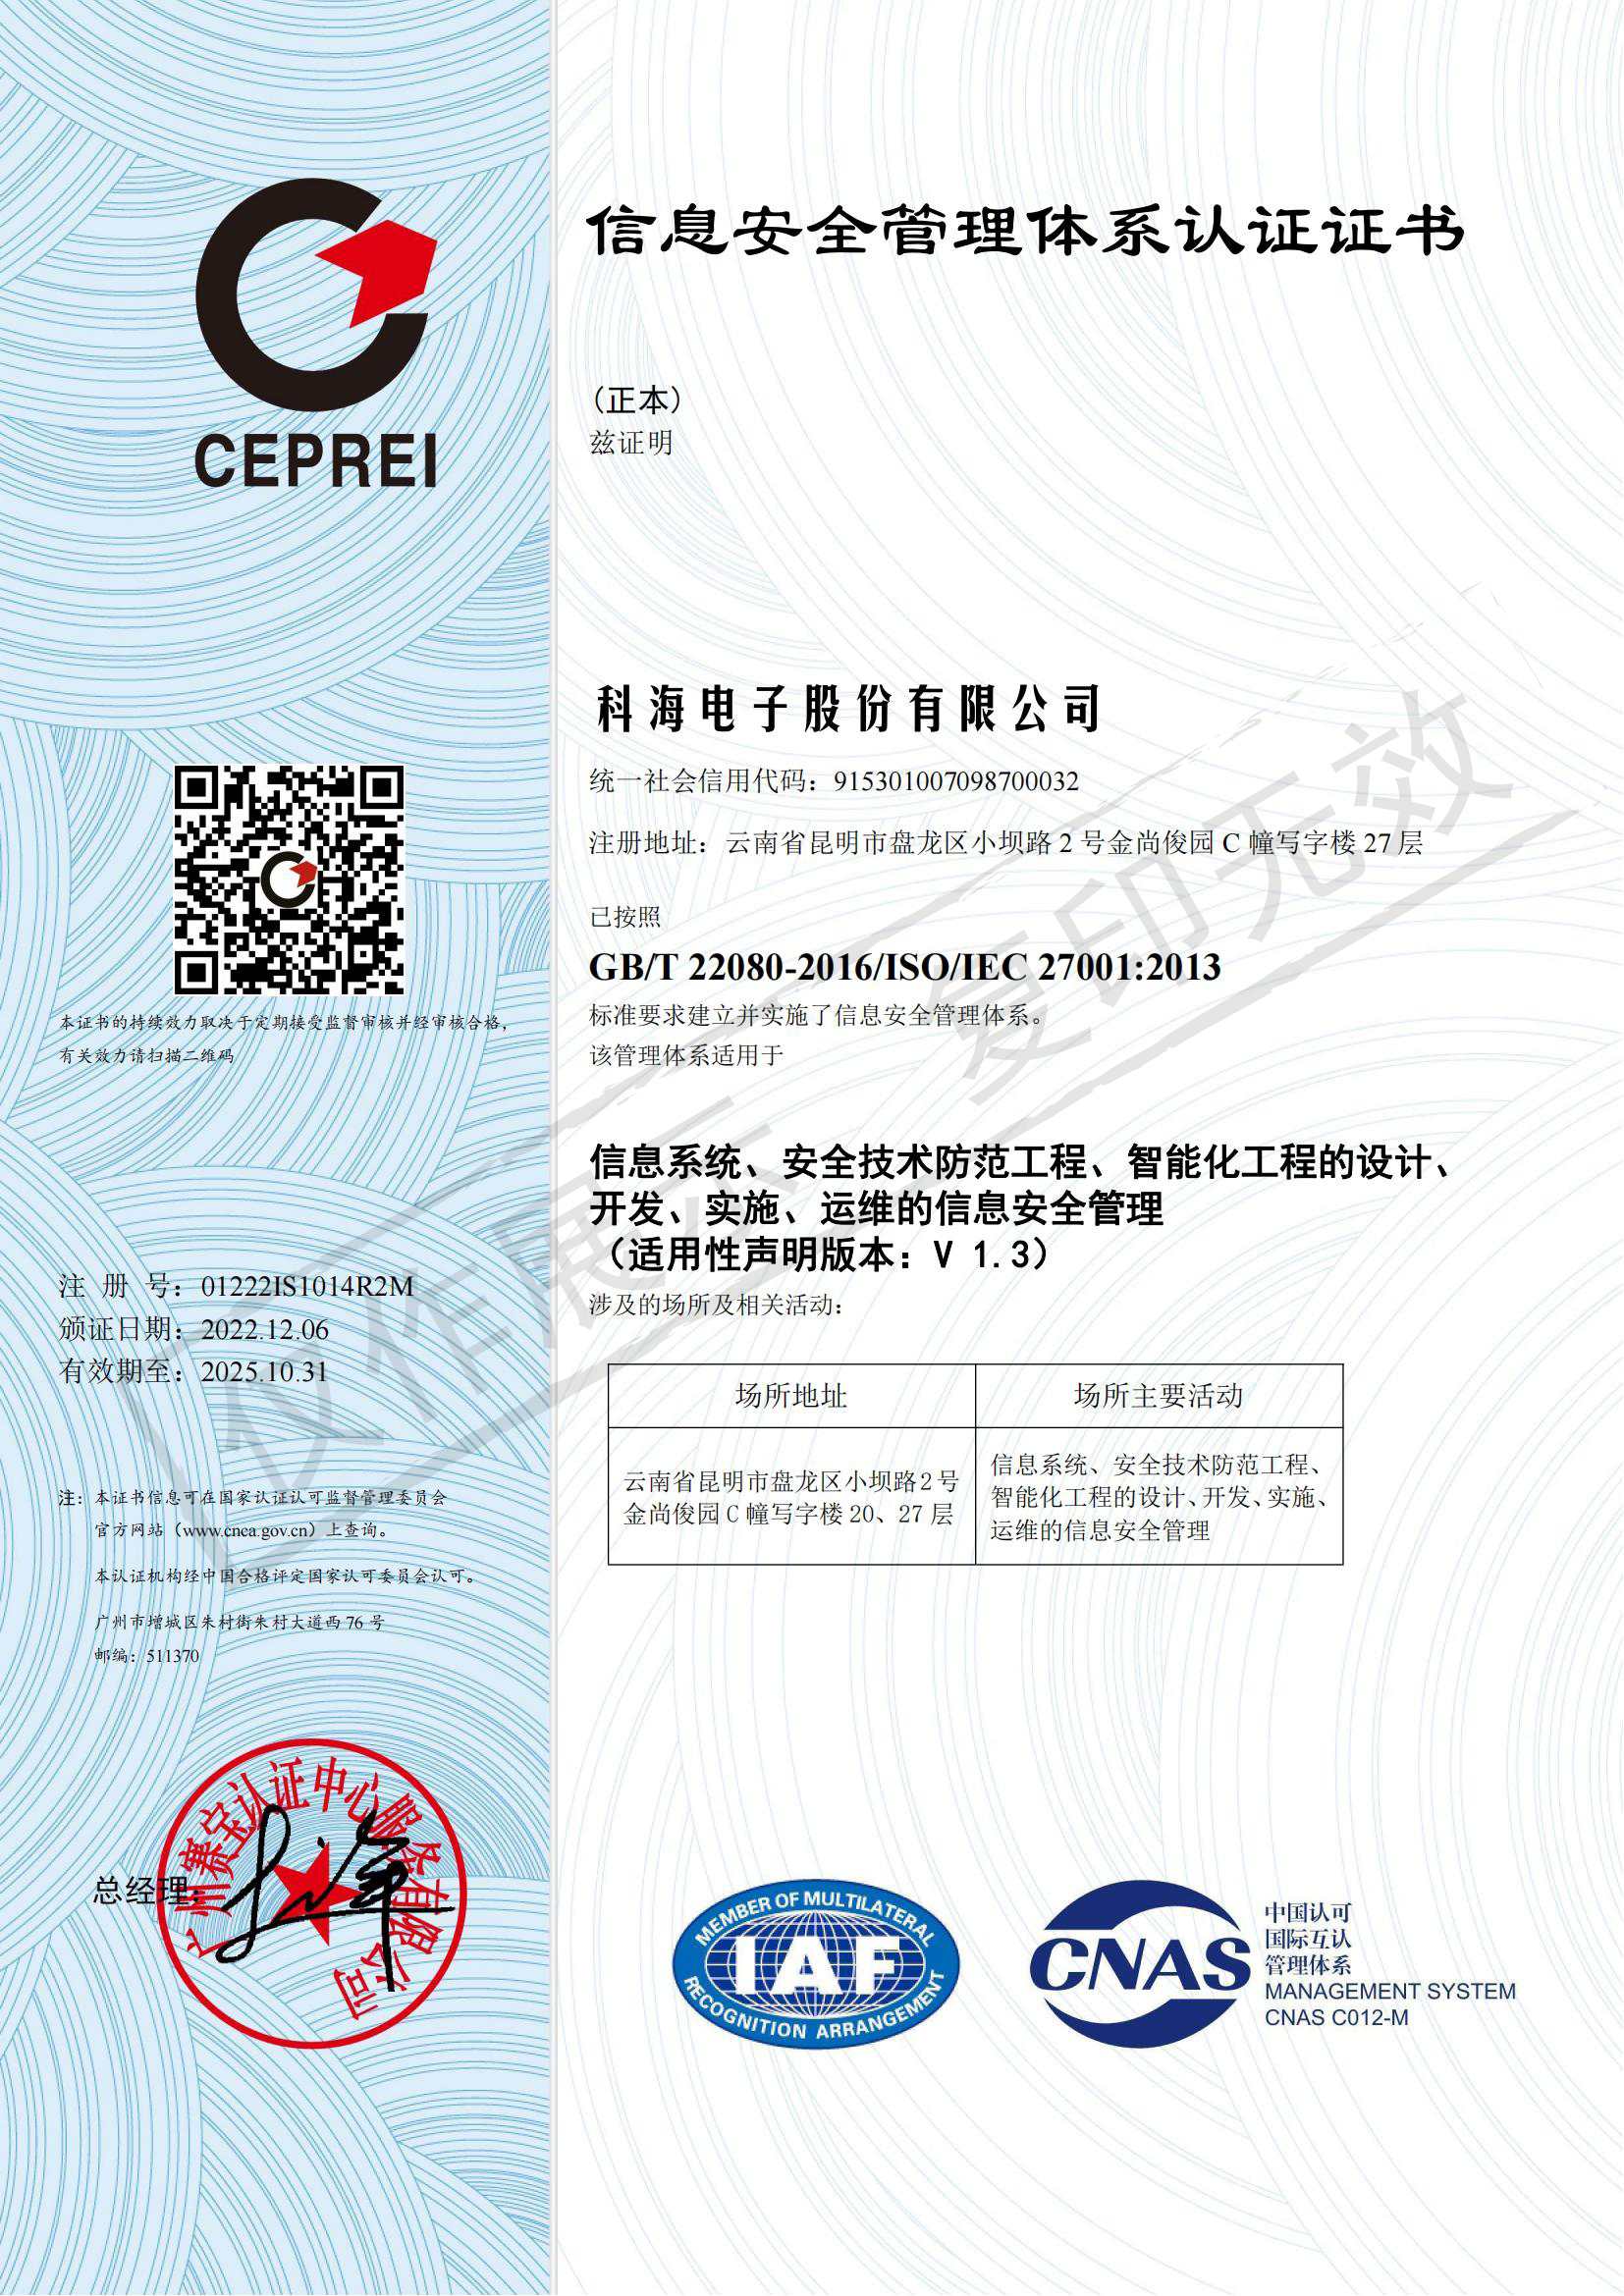 信息安全管理体系认证证书-中文2022年12月_00.jpg